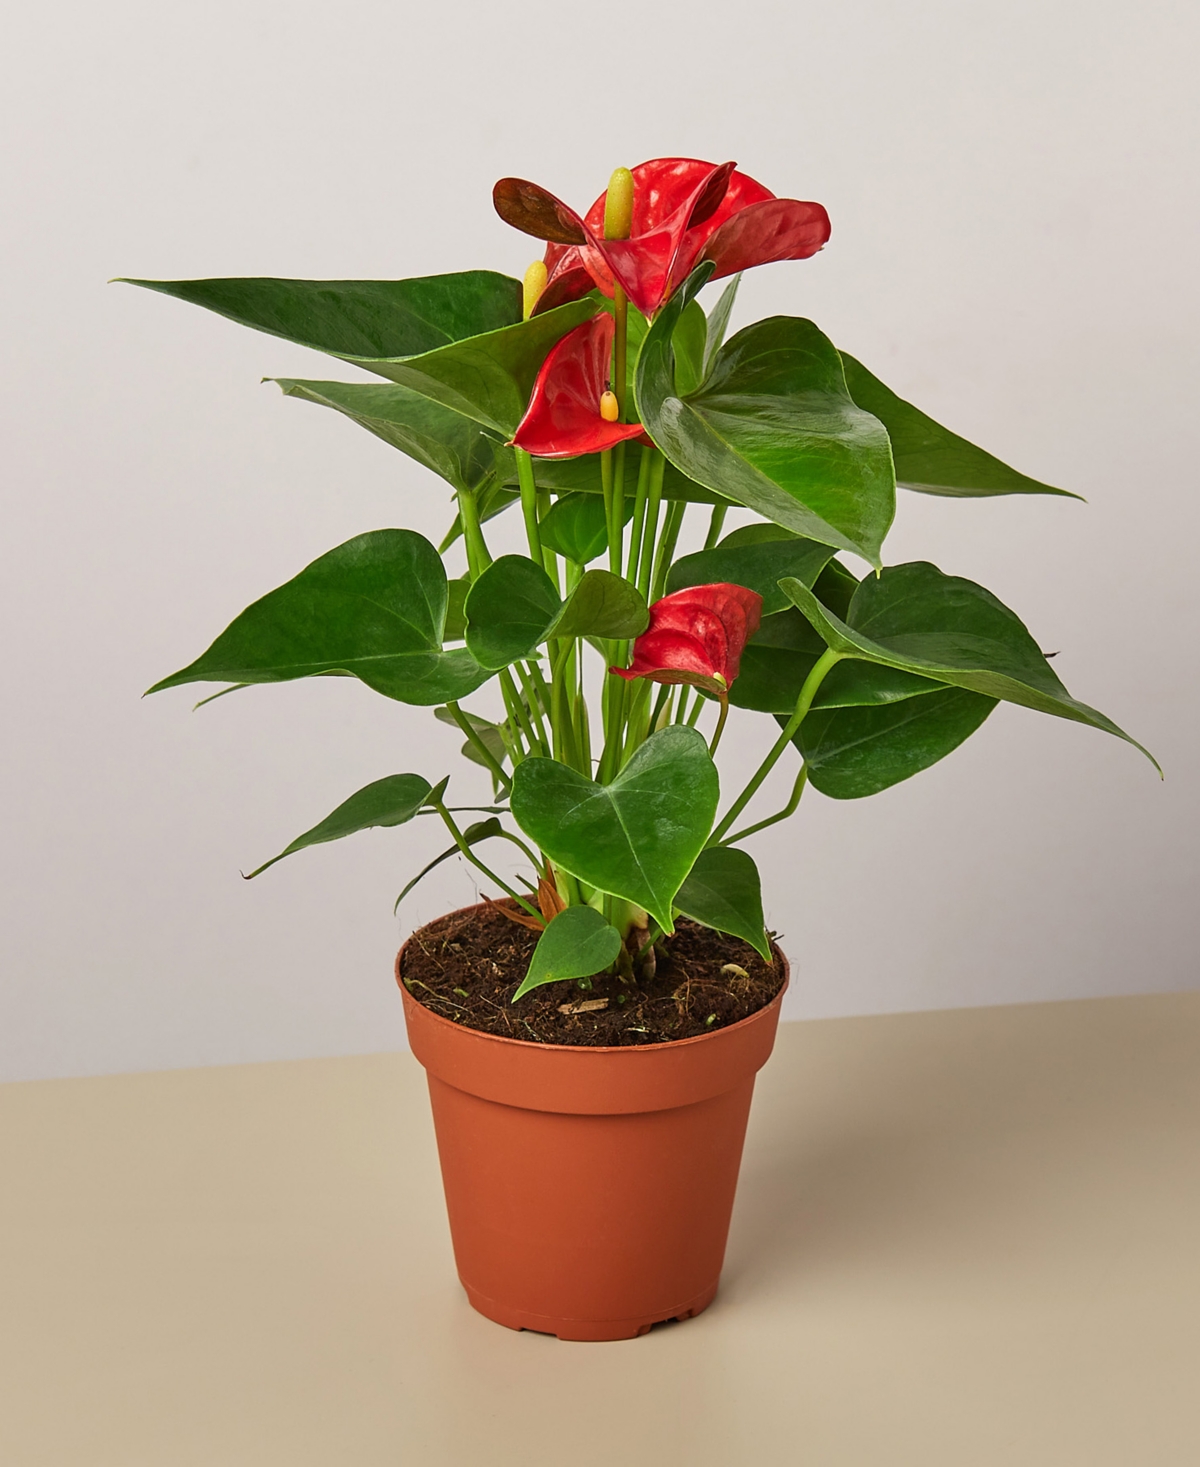 Red Anthurium Live Plant, 4" Pot